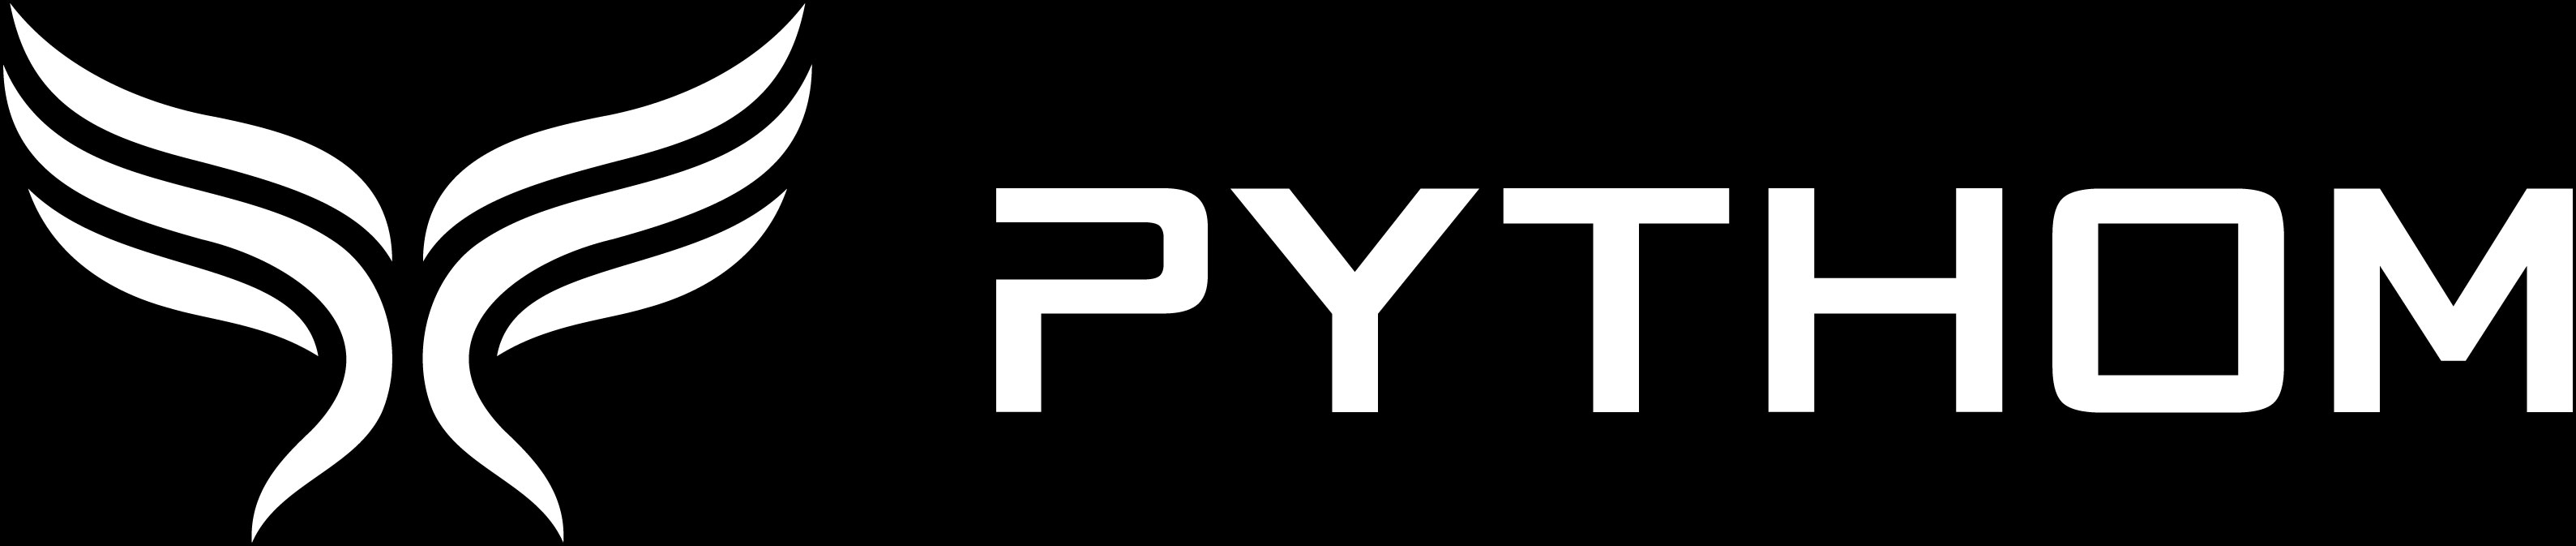 Pythom logo